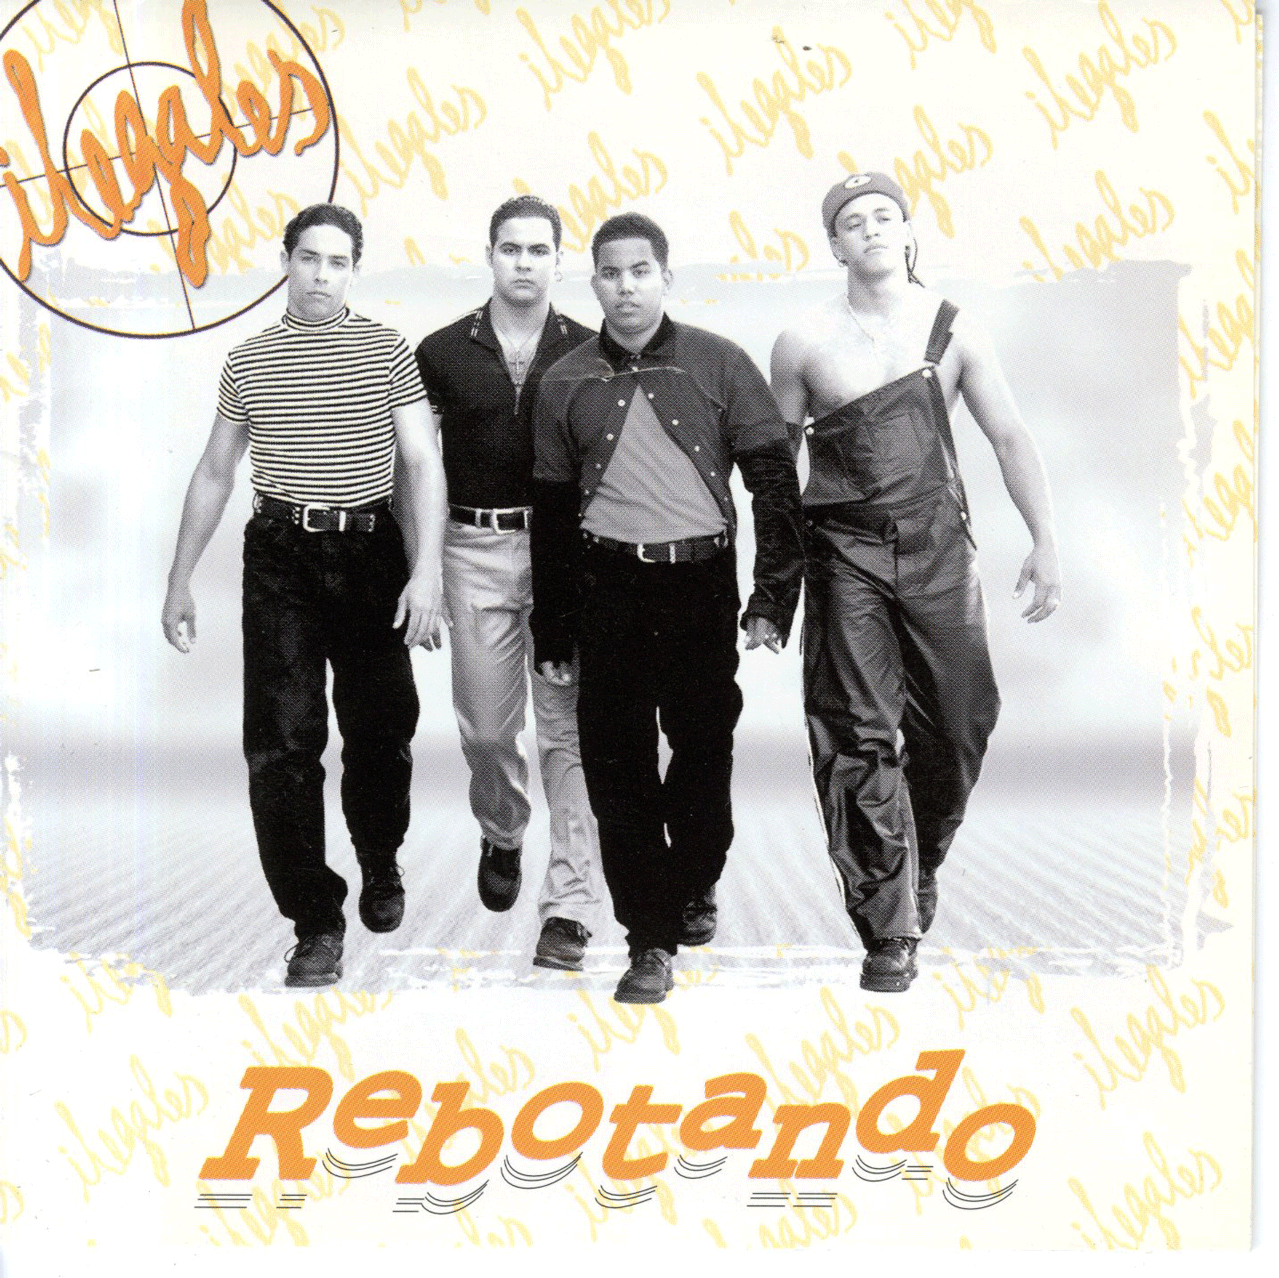 Ilegales Rebotando CD album cover, 1997